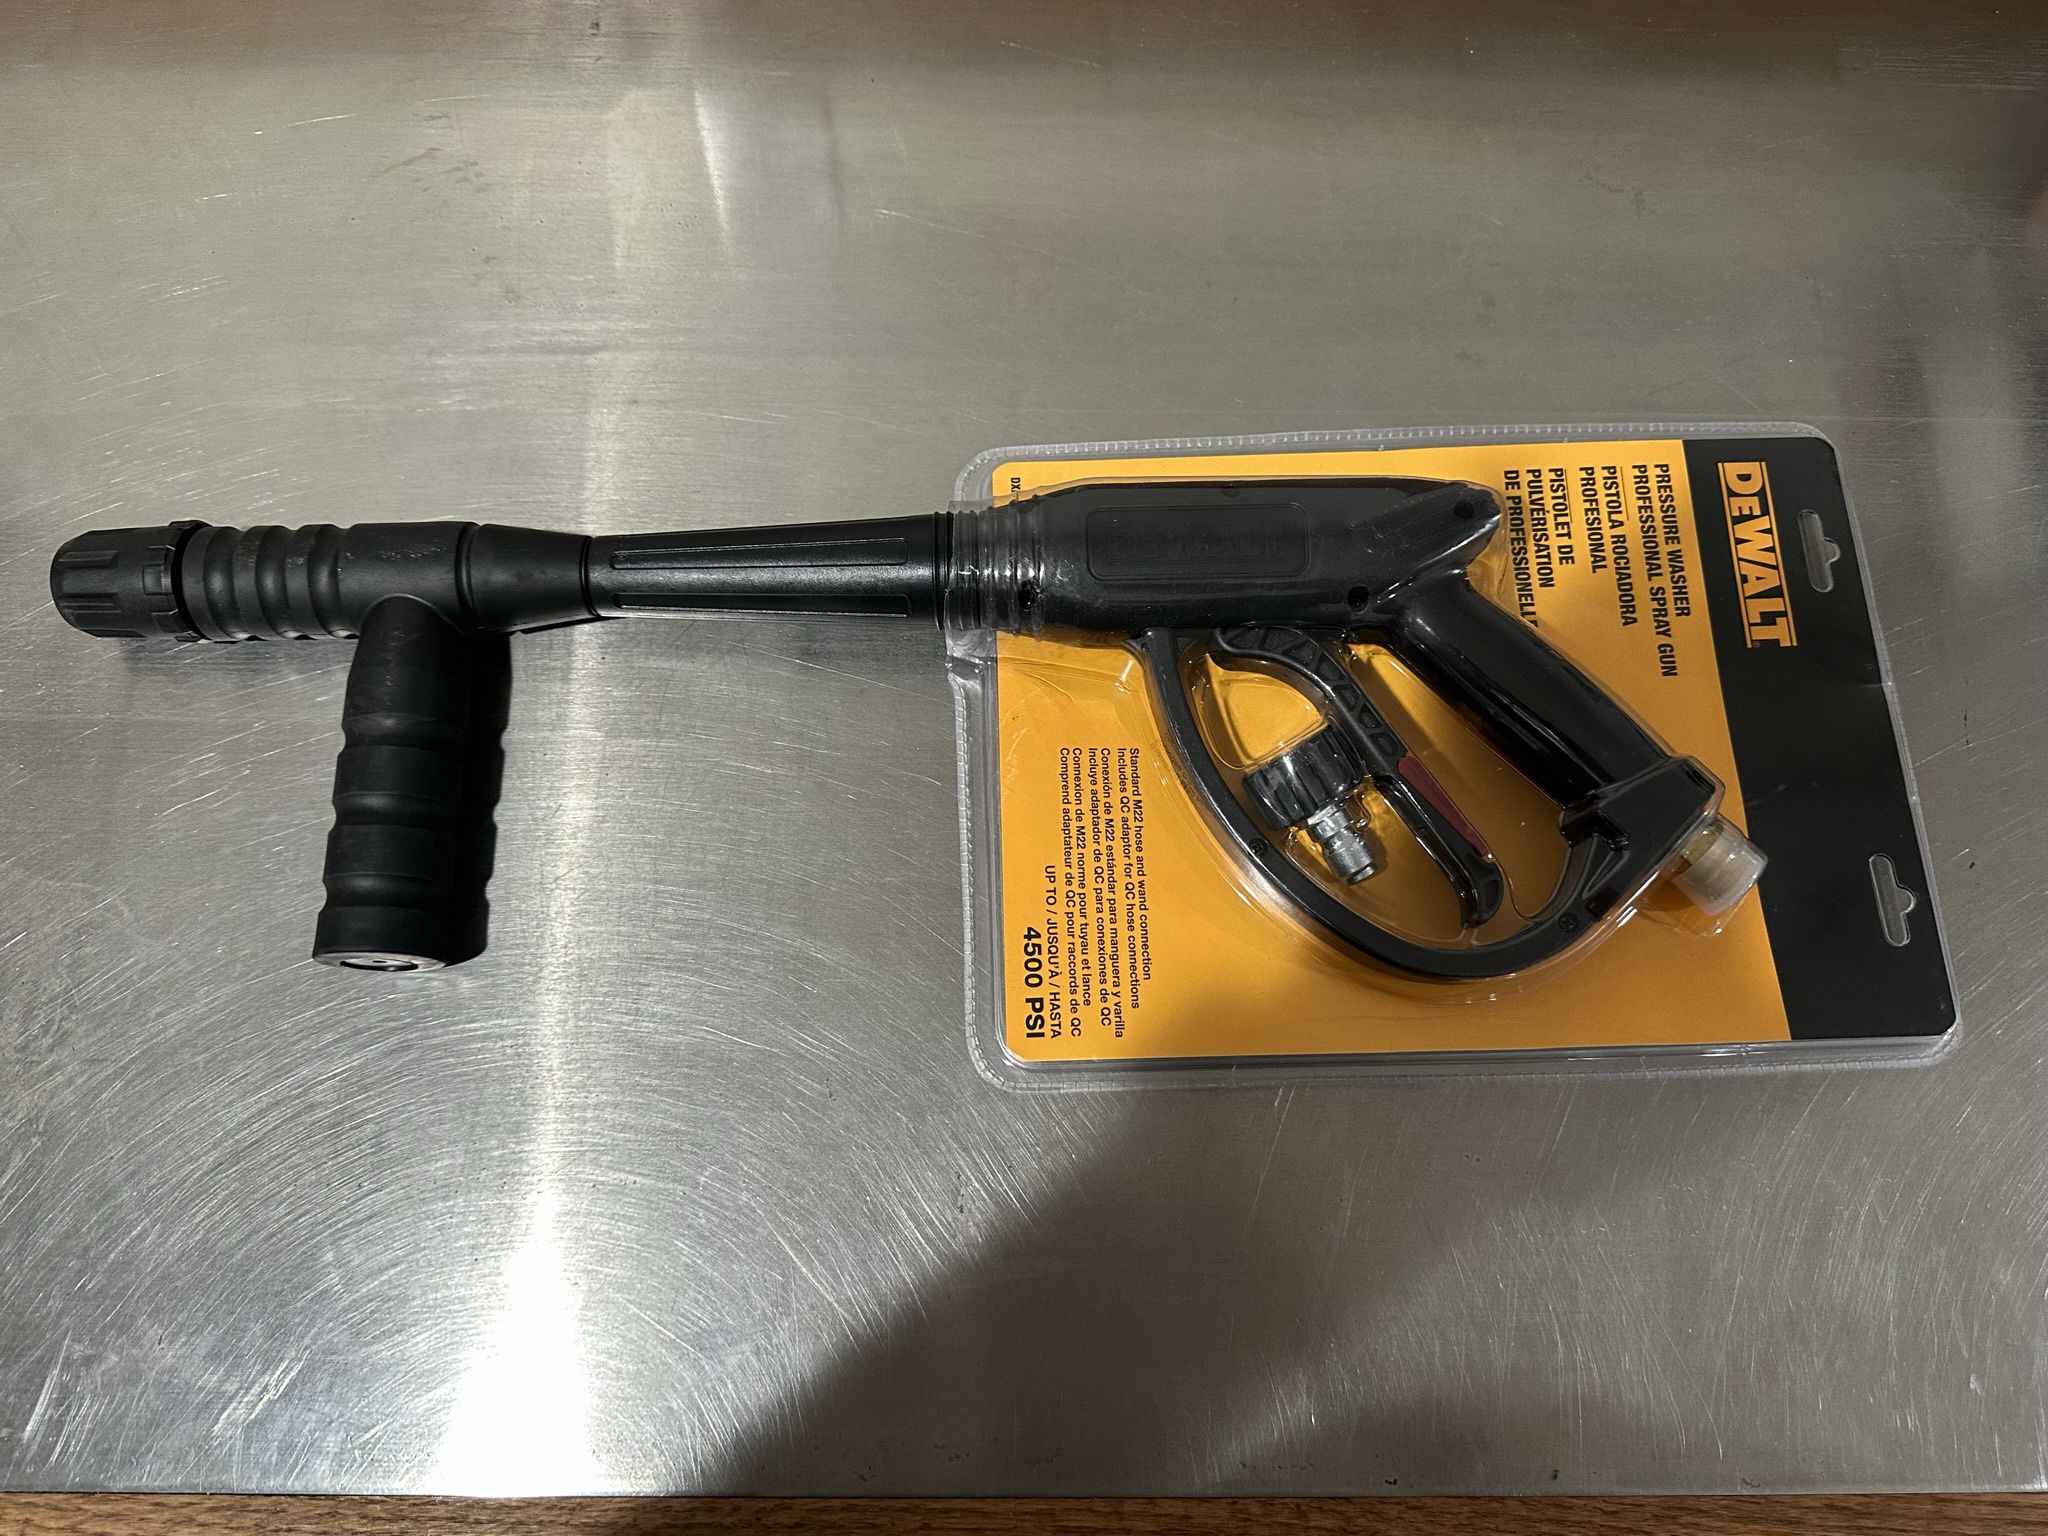 Dewalt Spray Gun M22 Connections For Cold Water Pressure Washer 4500 Psi